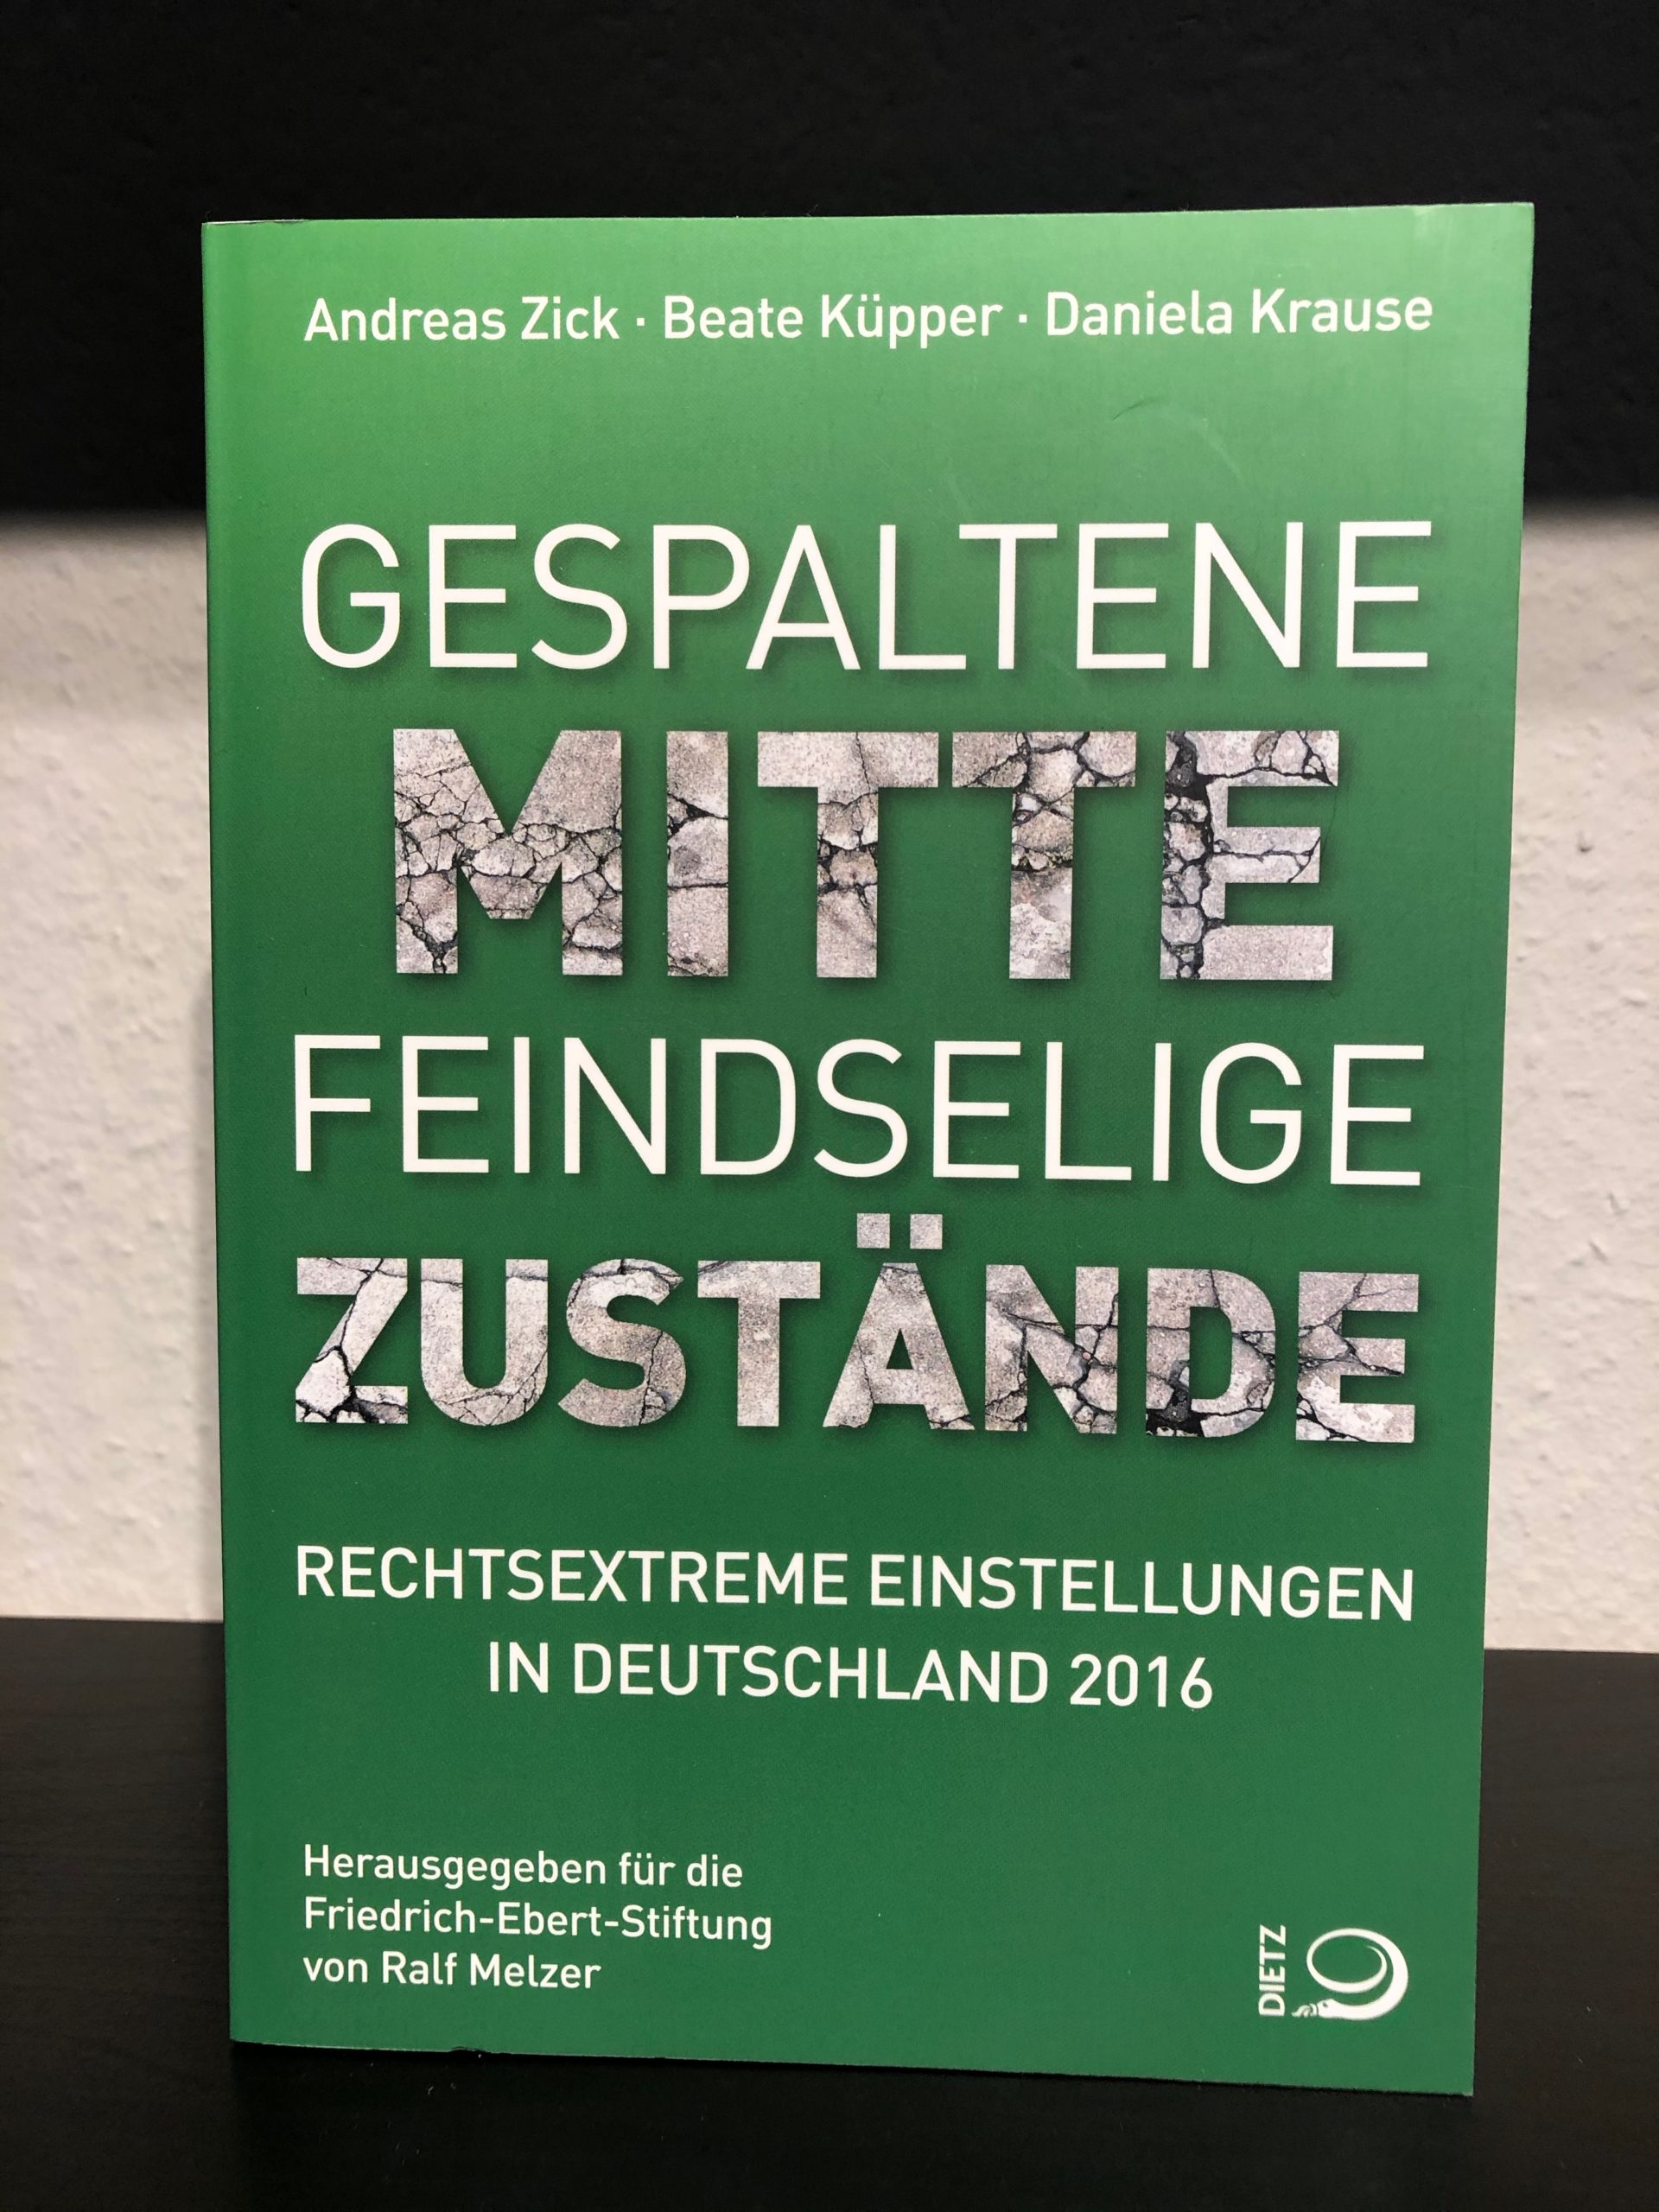 Gespaltene Mitte - Feindselige Zustände Rechtsextreme Einstellungen in Deutschland 2016 - Andreas Zick, Beate Küpper, Danilela Krause